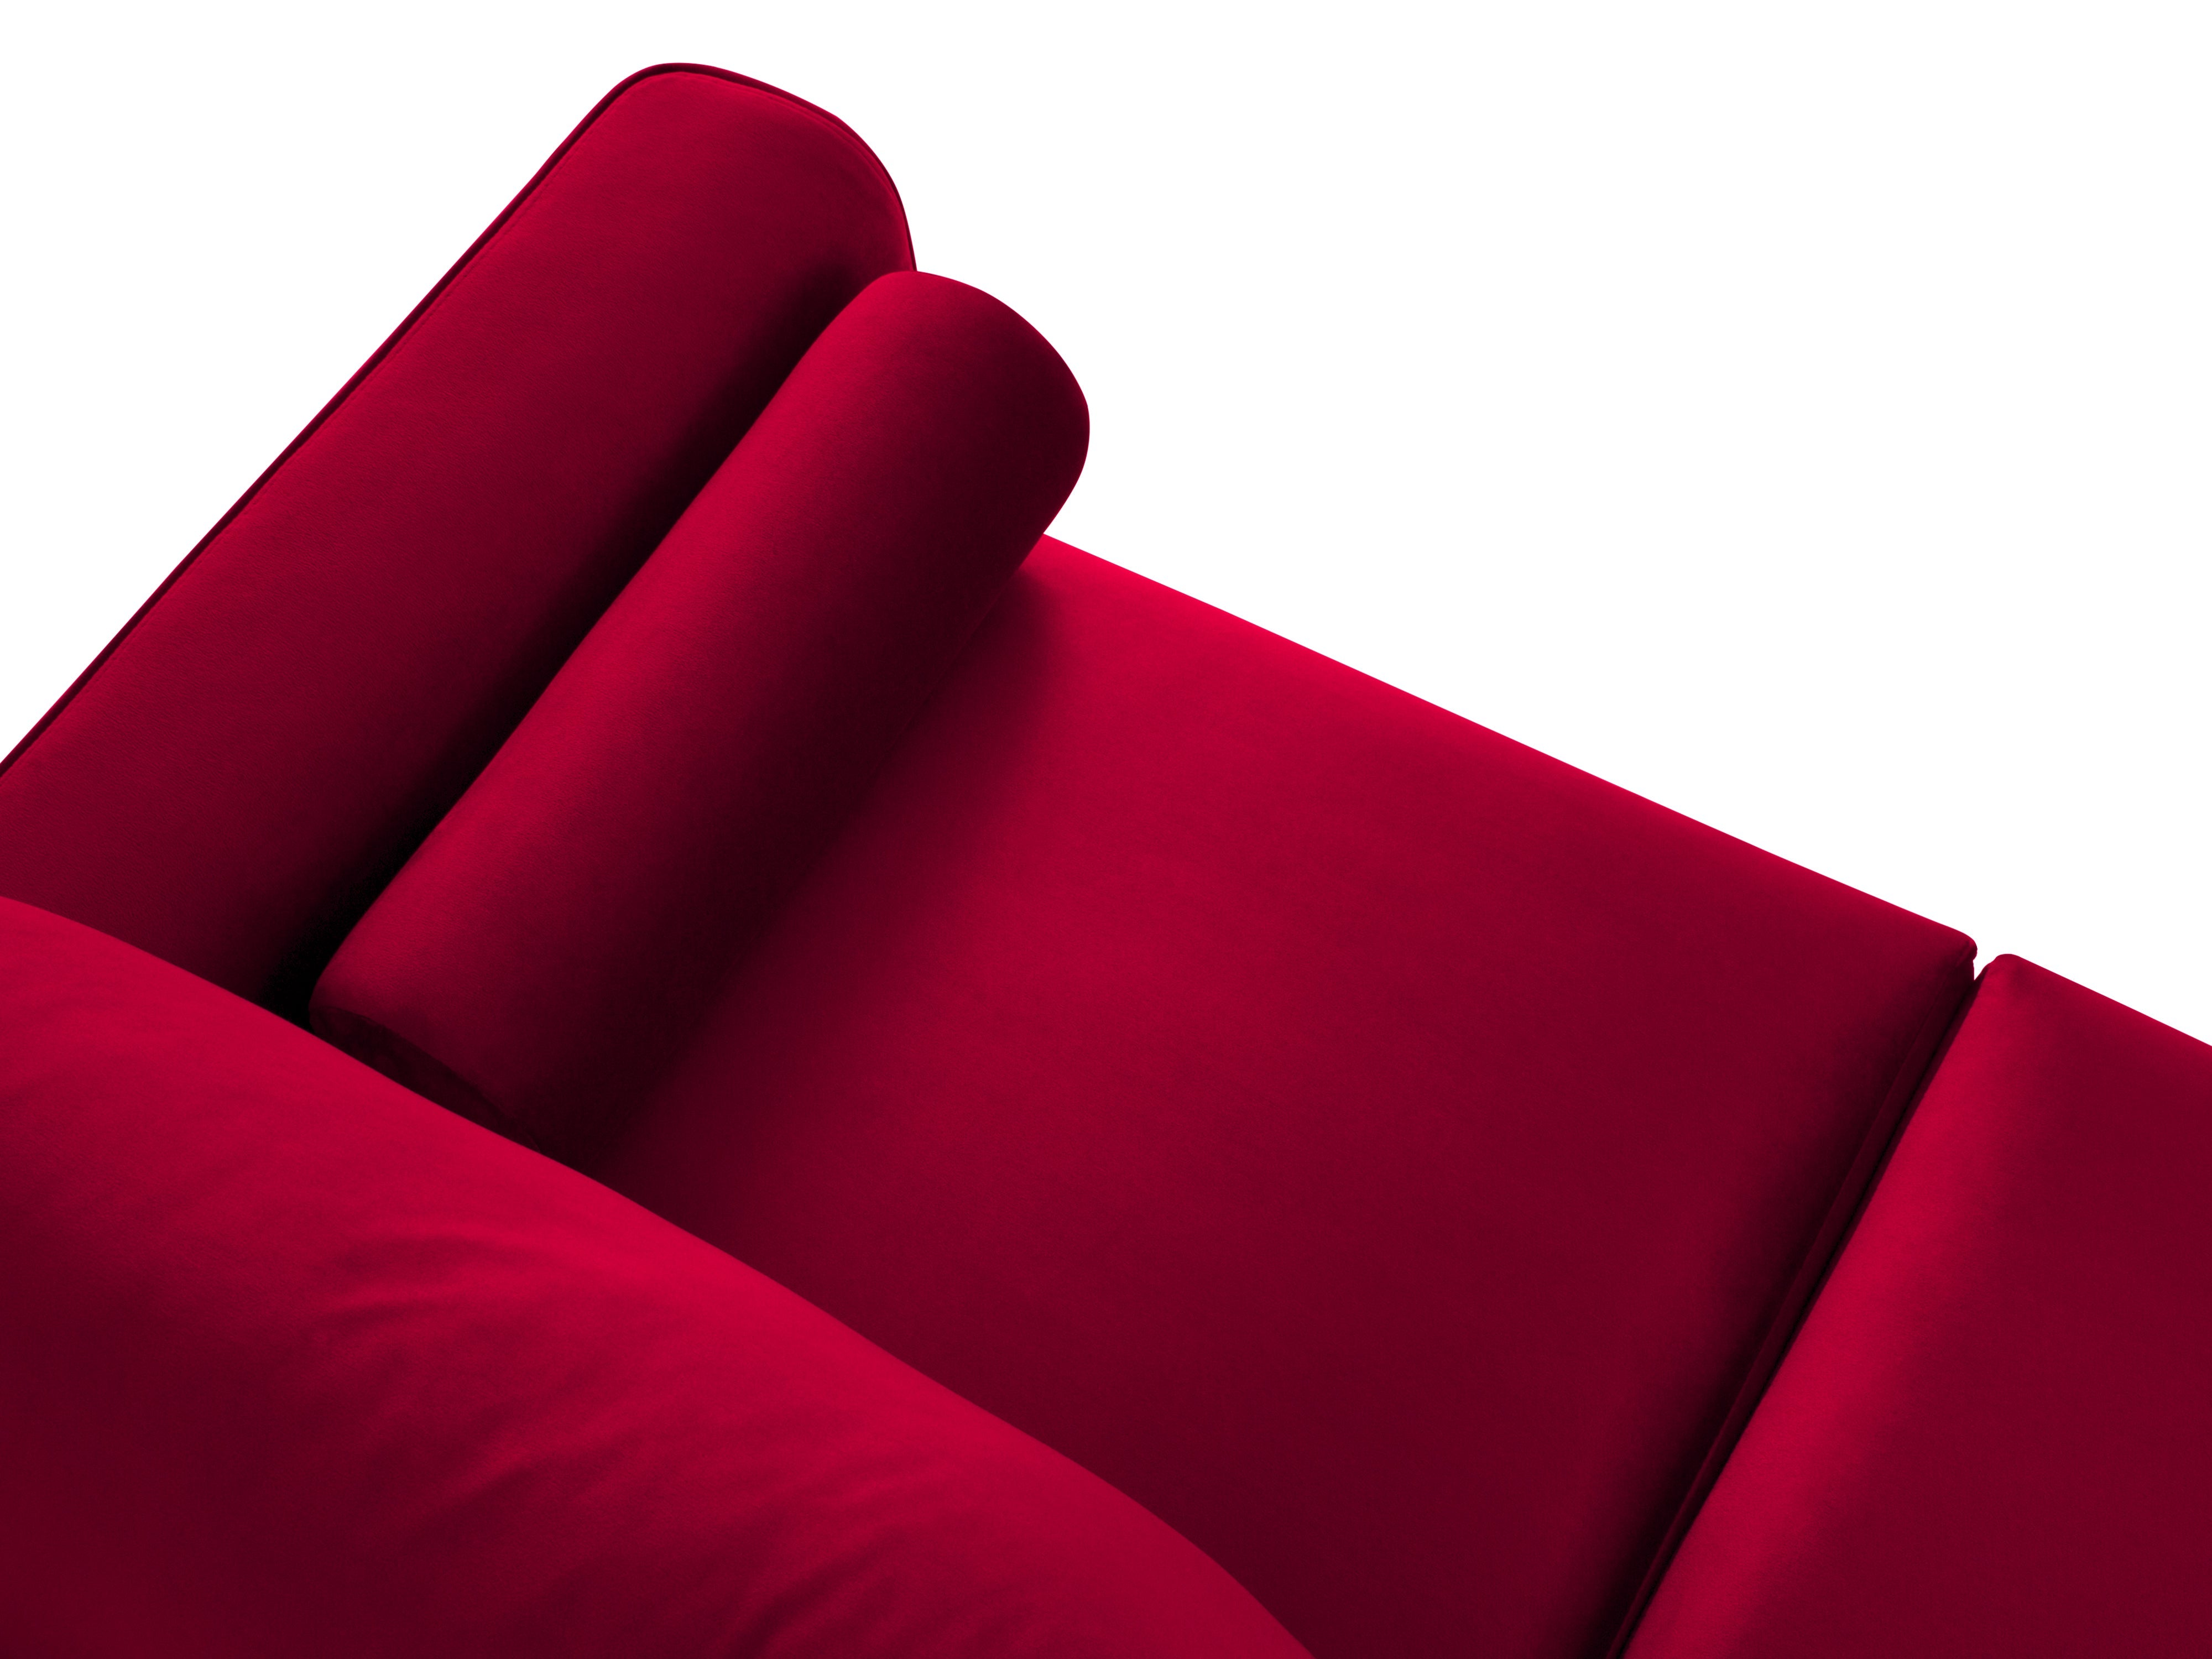 velvet red sofa with pillows